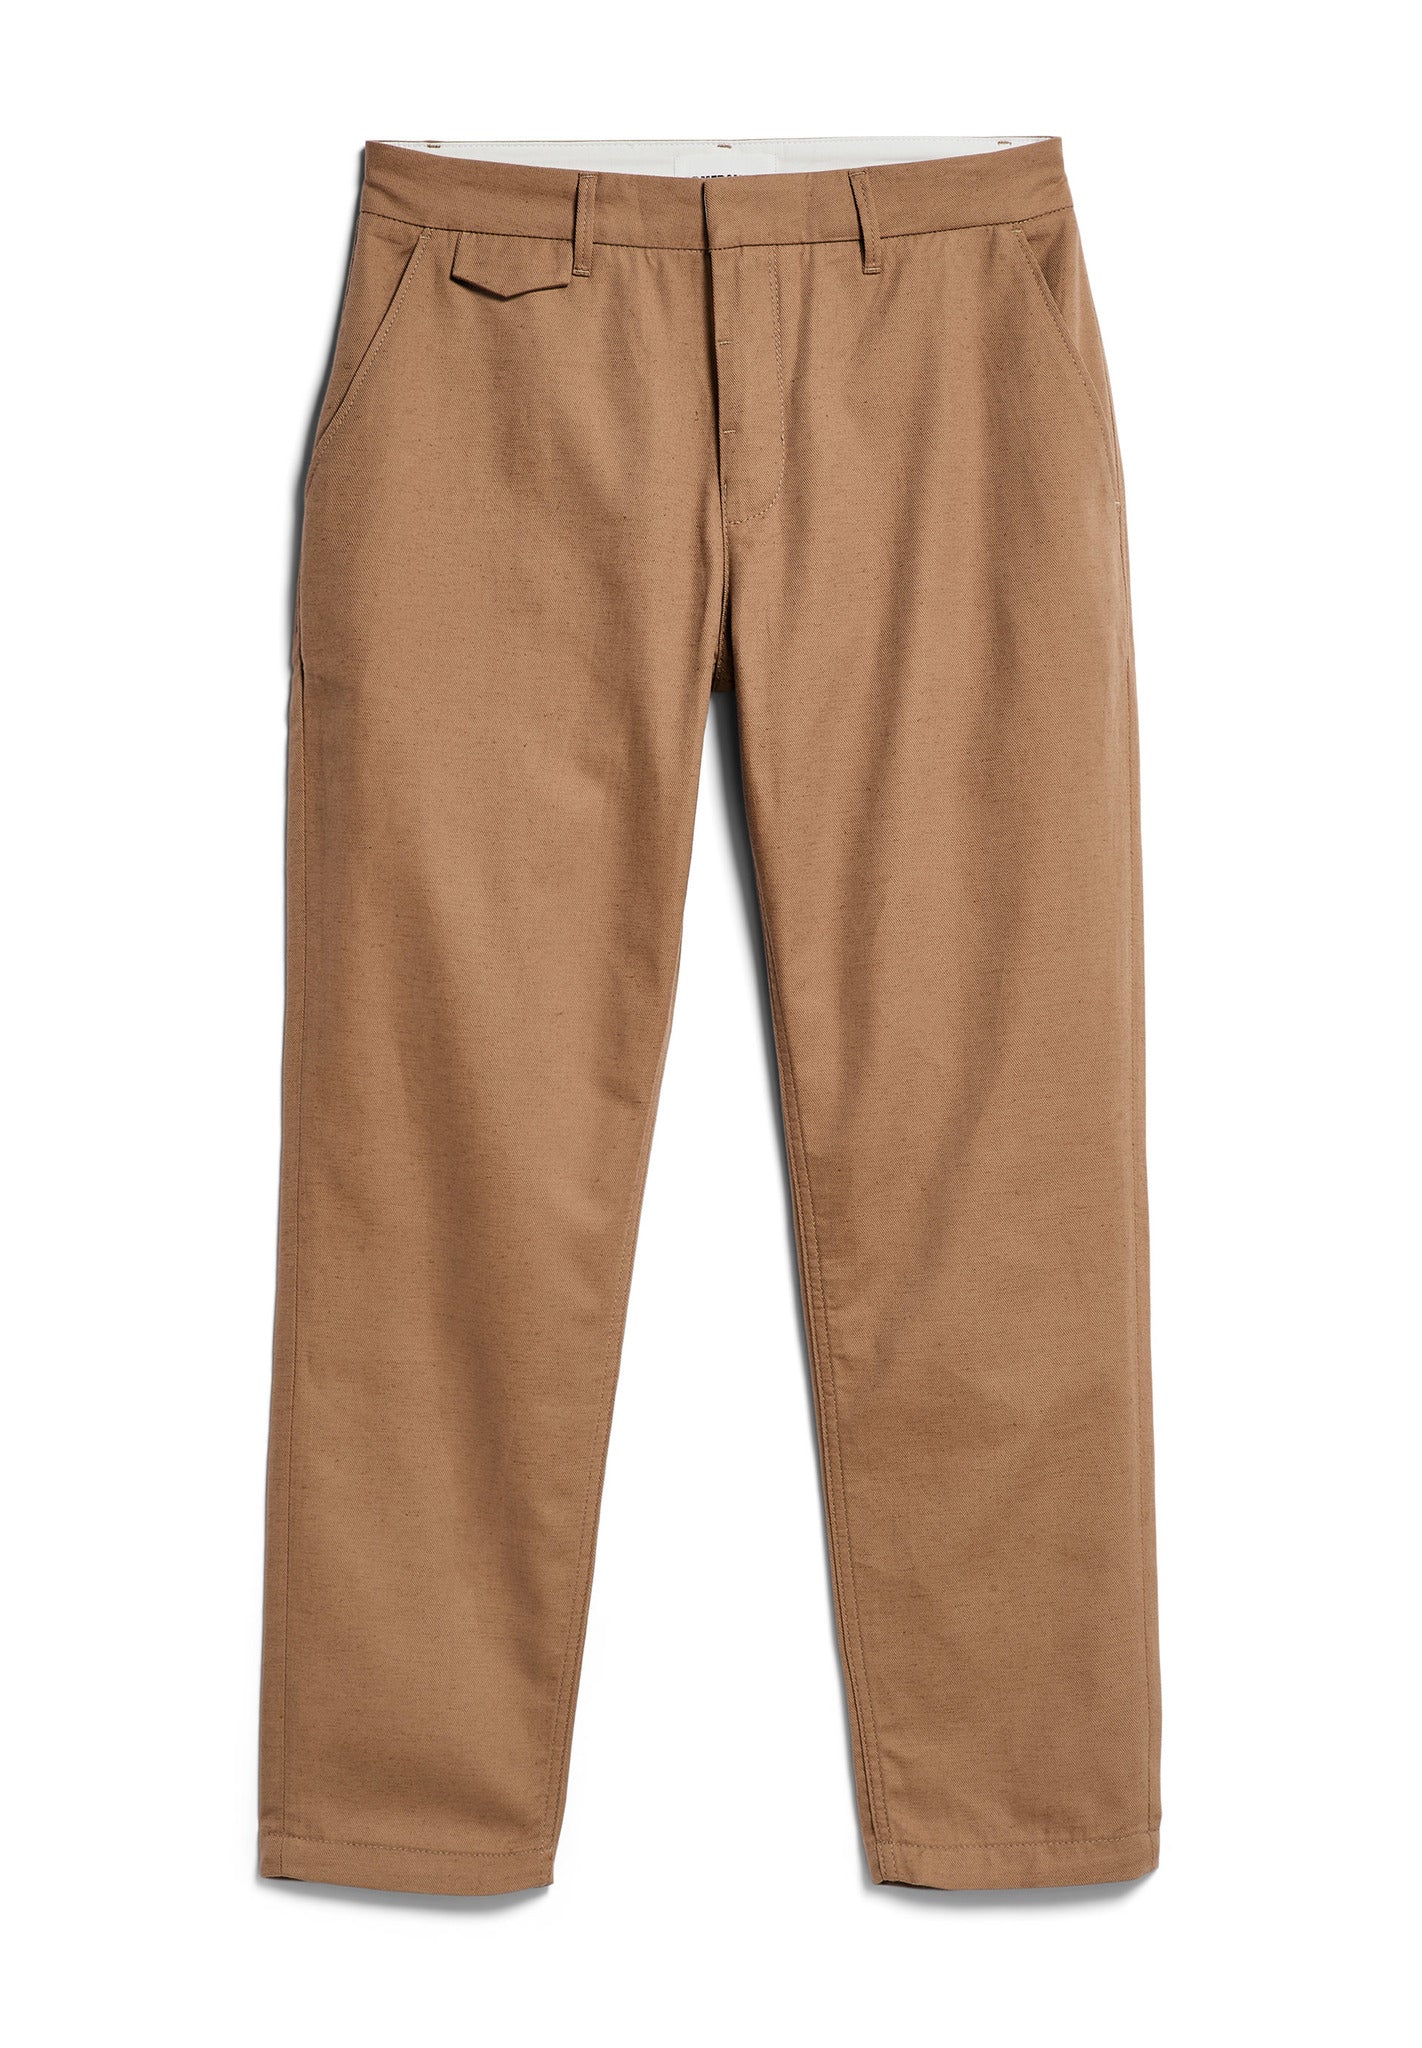 
                  
                    ALVAARO Cinnamon Dust Linen Trousers
                  
                